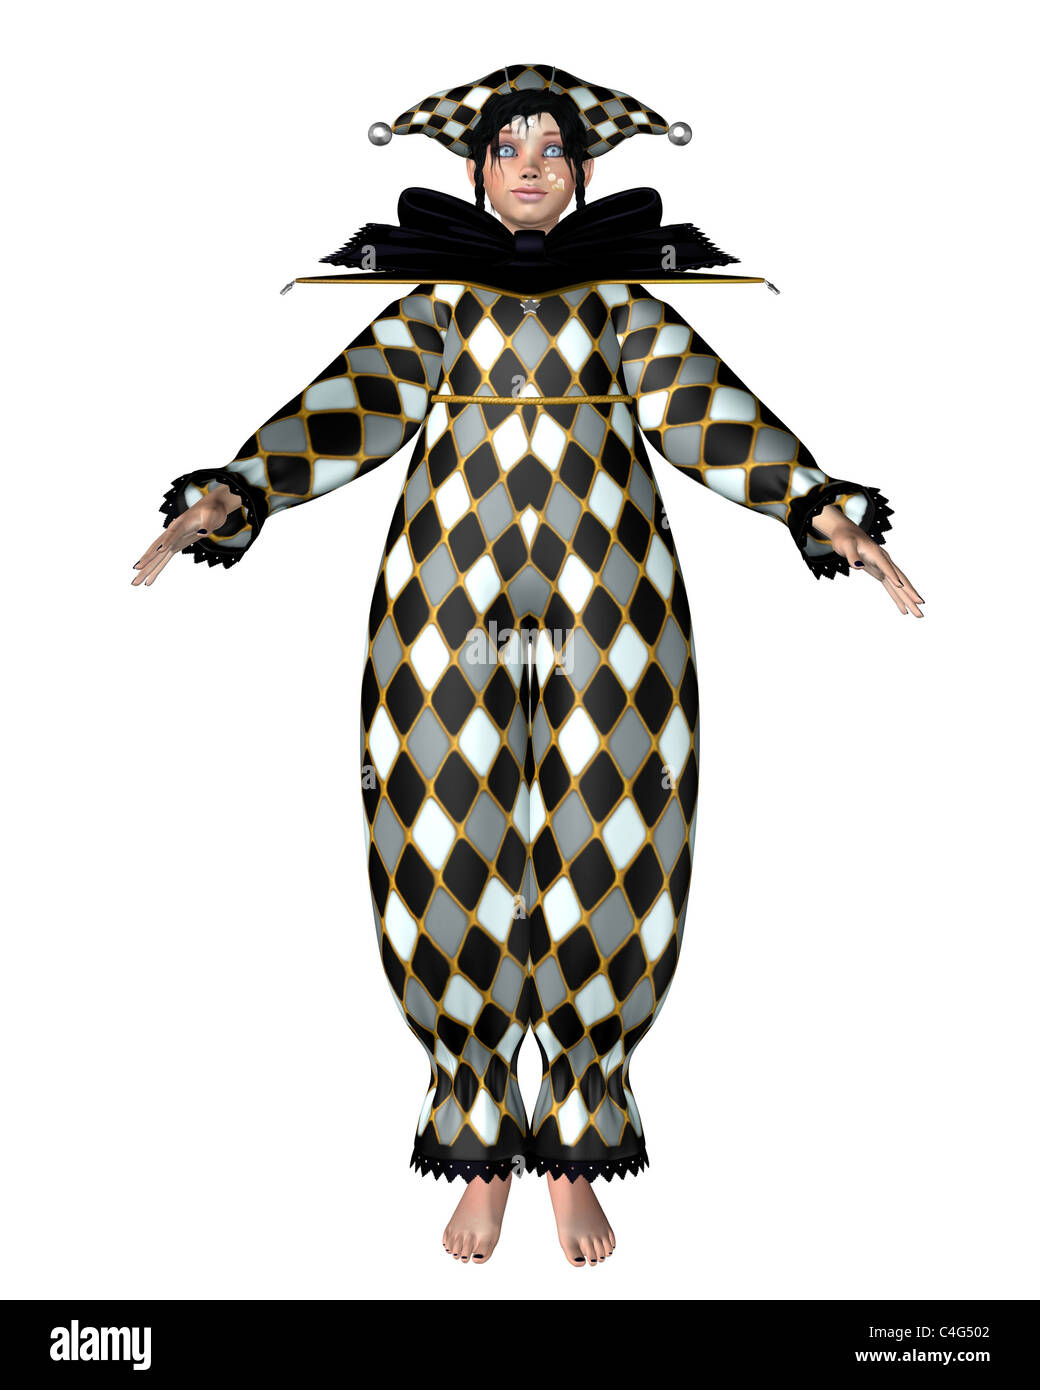 Poupée Clown Pierrot - Harlequin vérifie Banque D'Images